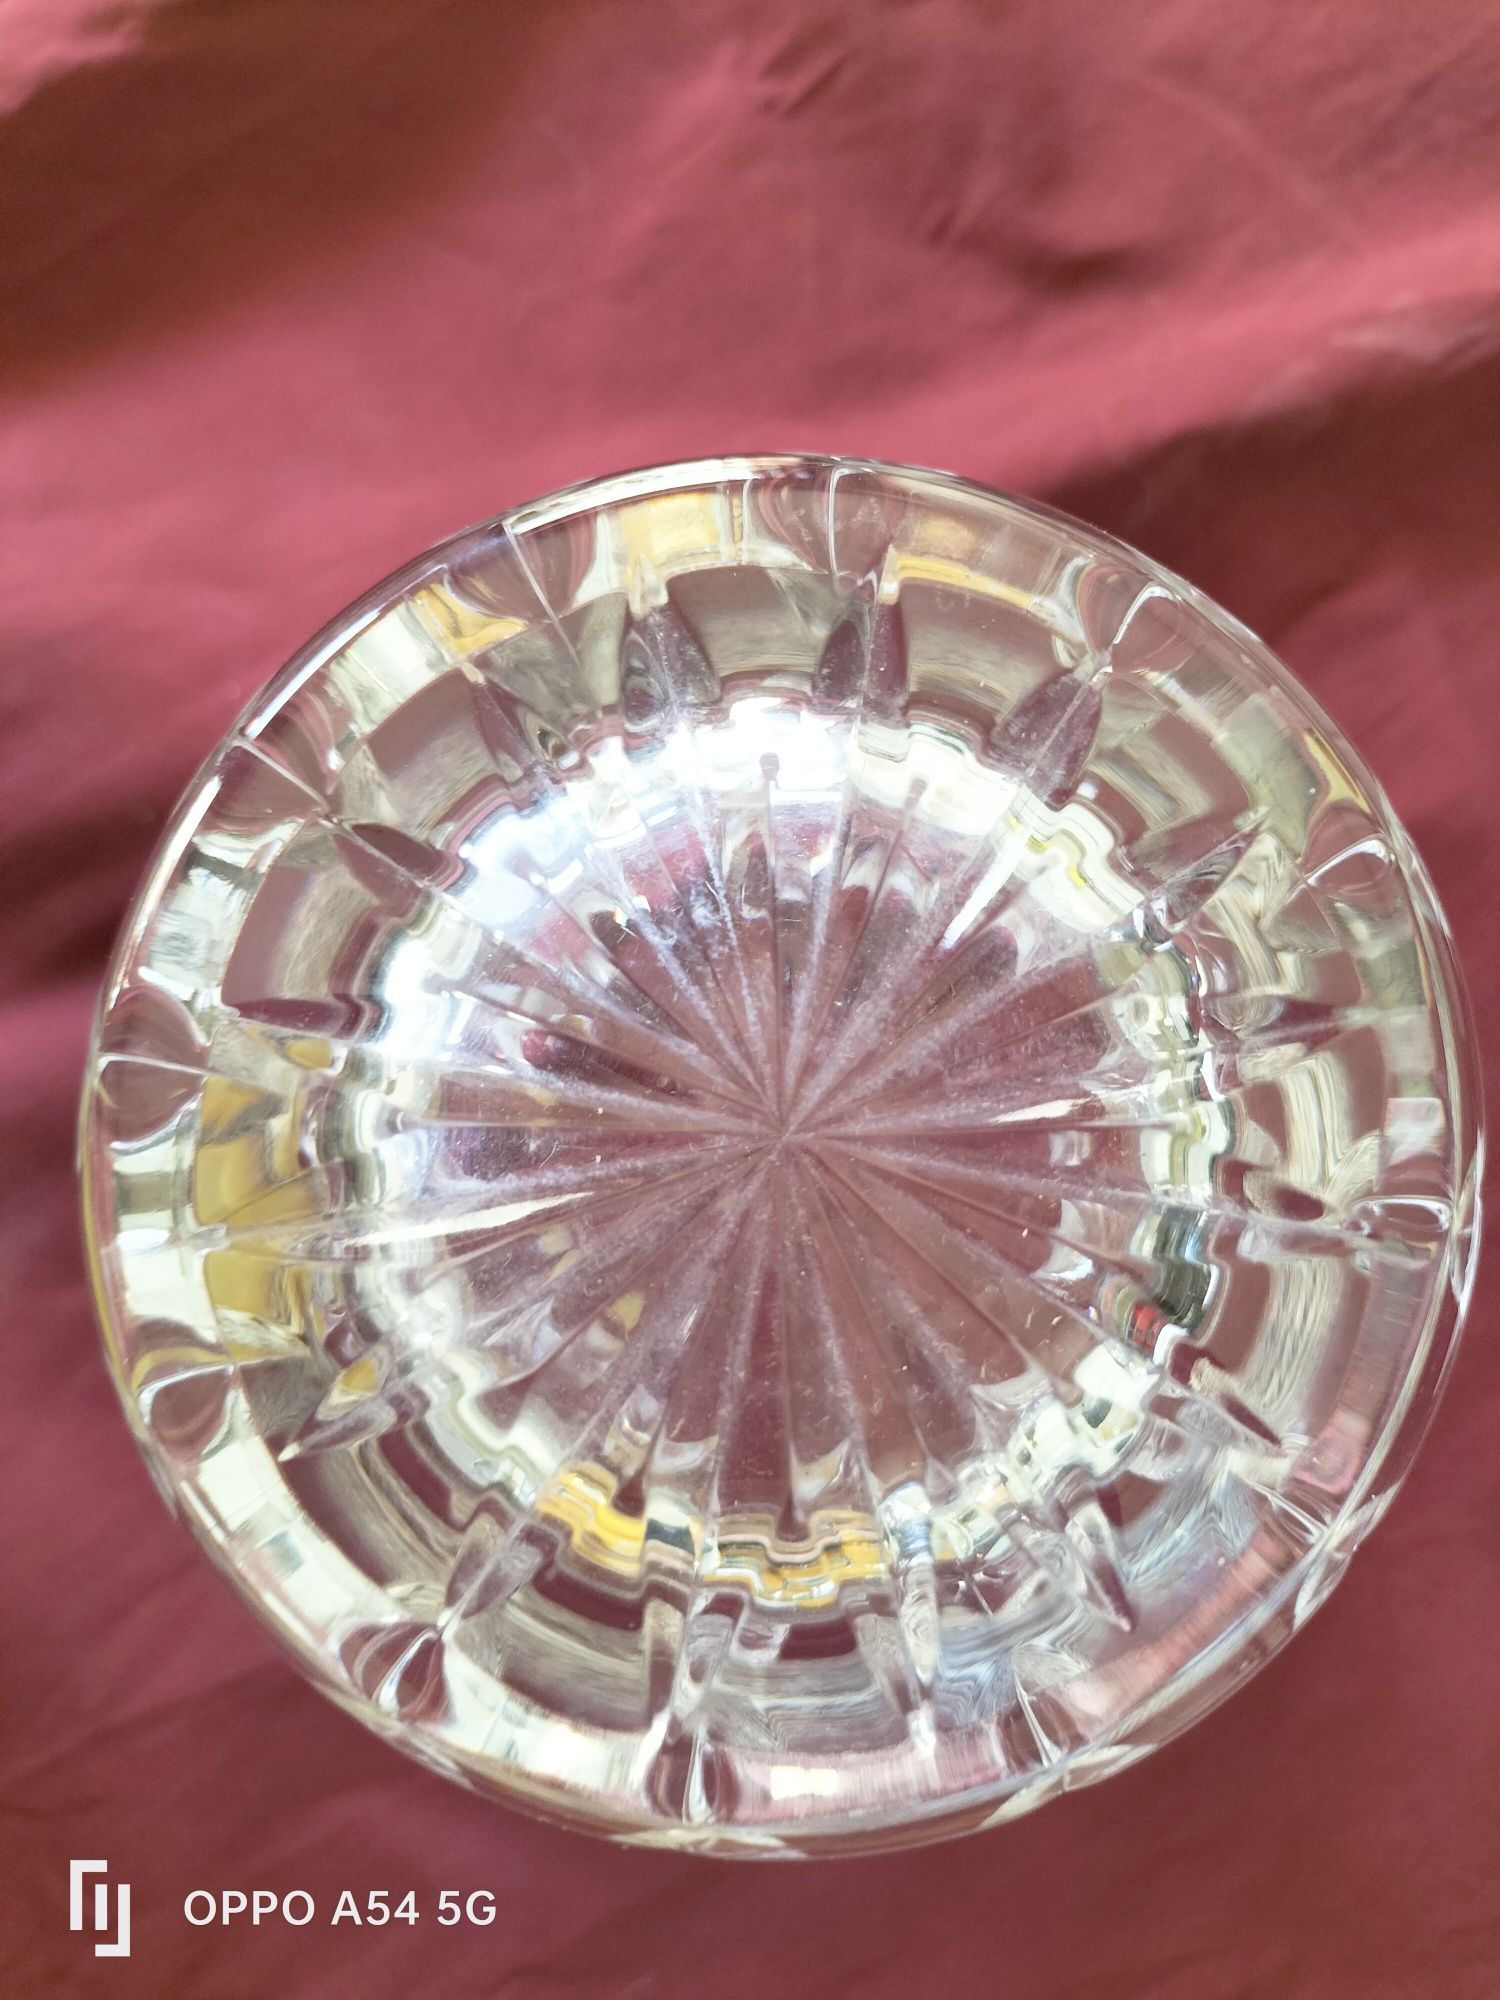 Conjunto de 4 copos cristal Atlantis ,novos,nunca usados